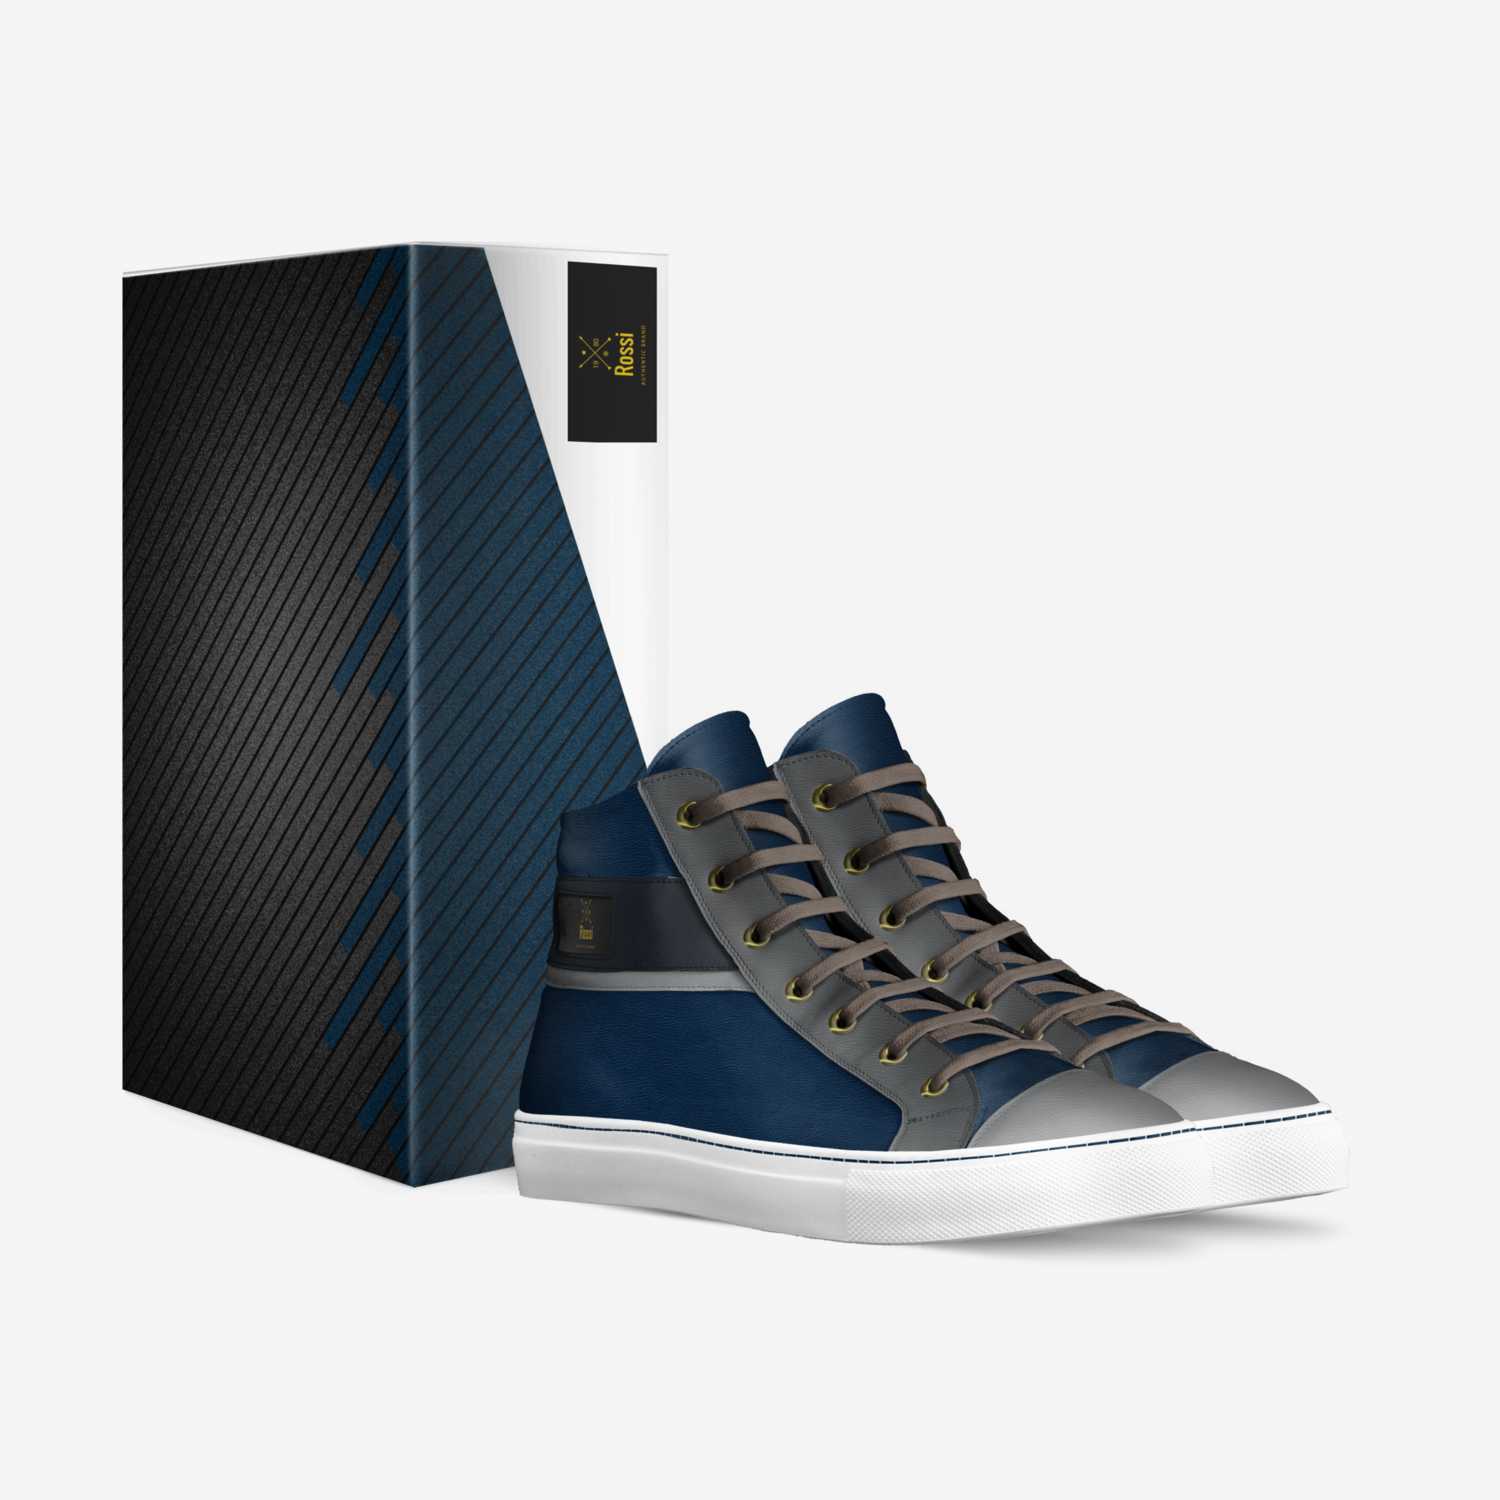 limoen Stuiteren Buik Rossi | A Custom Shoe concept by Nino Rossi